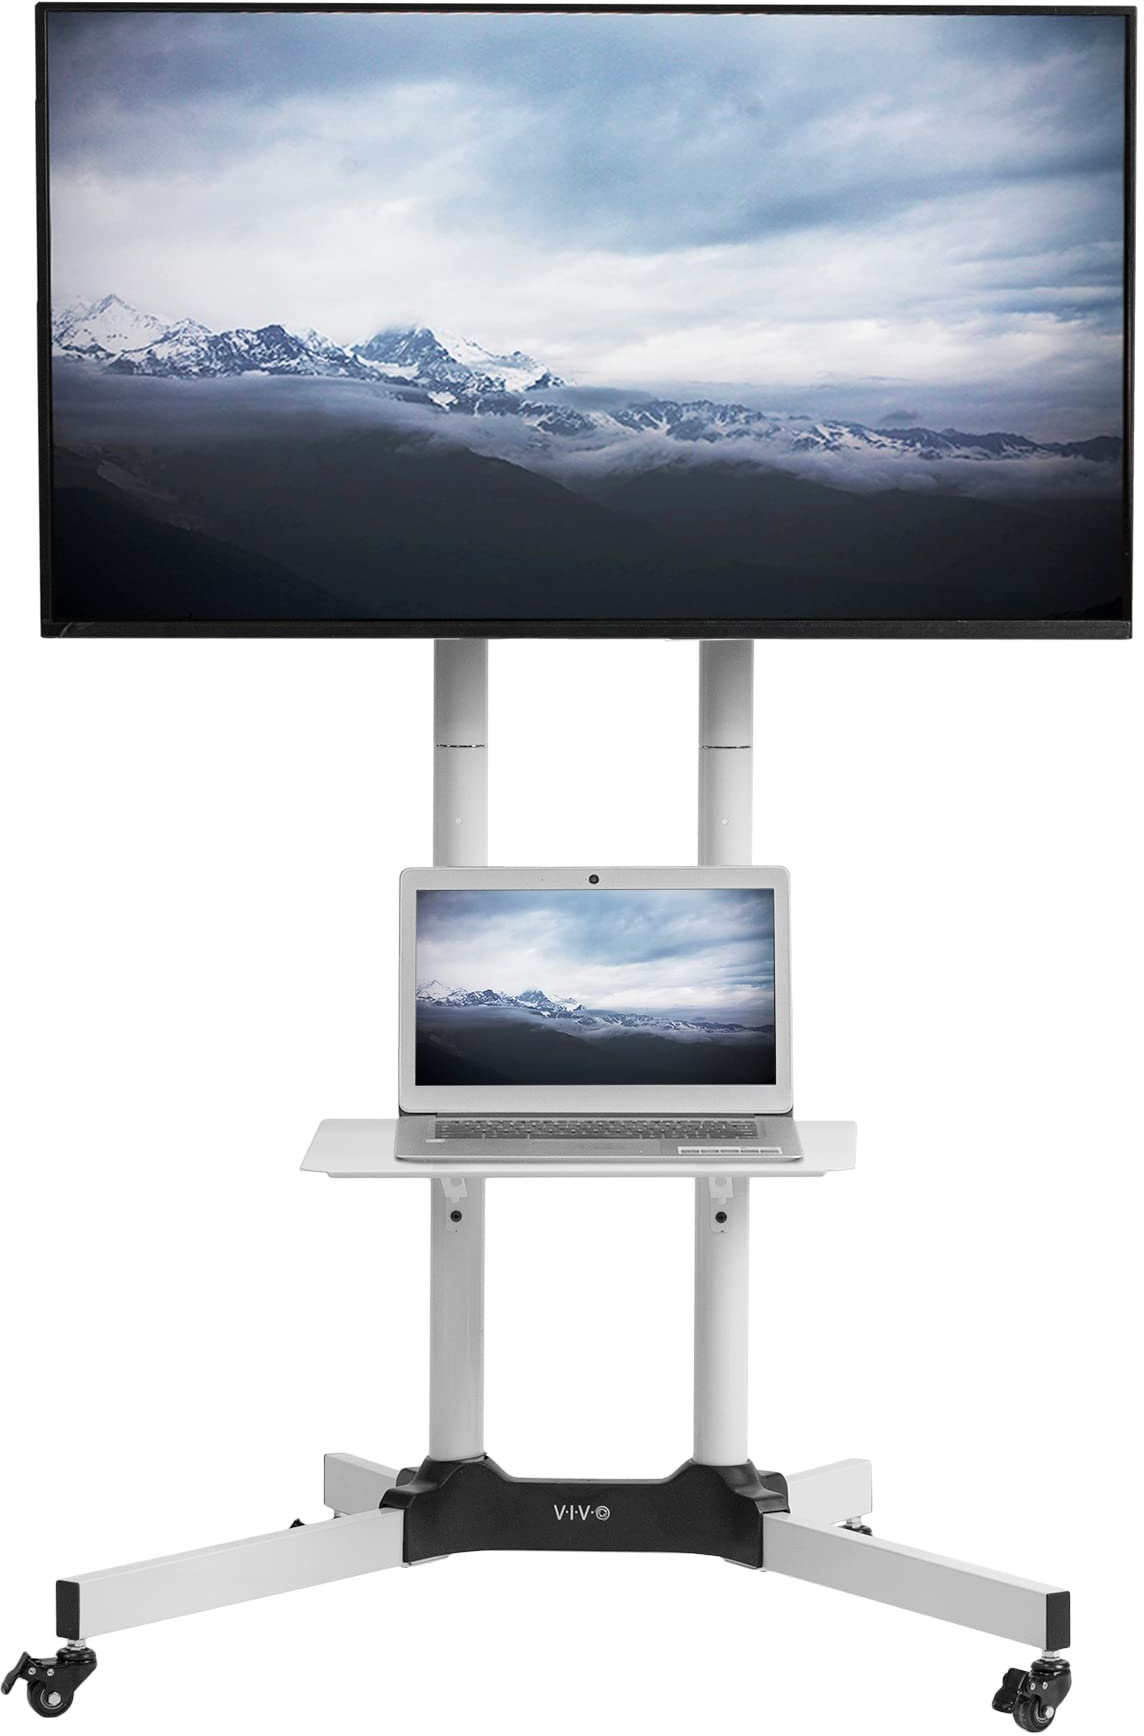 VIVO Weiß Mobile tv Wagen für LCD LED Plasma Flachbildschirme mit Rädern Stehen passt 32" bis 65" (Stand-tv03w)